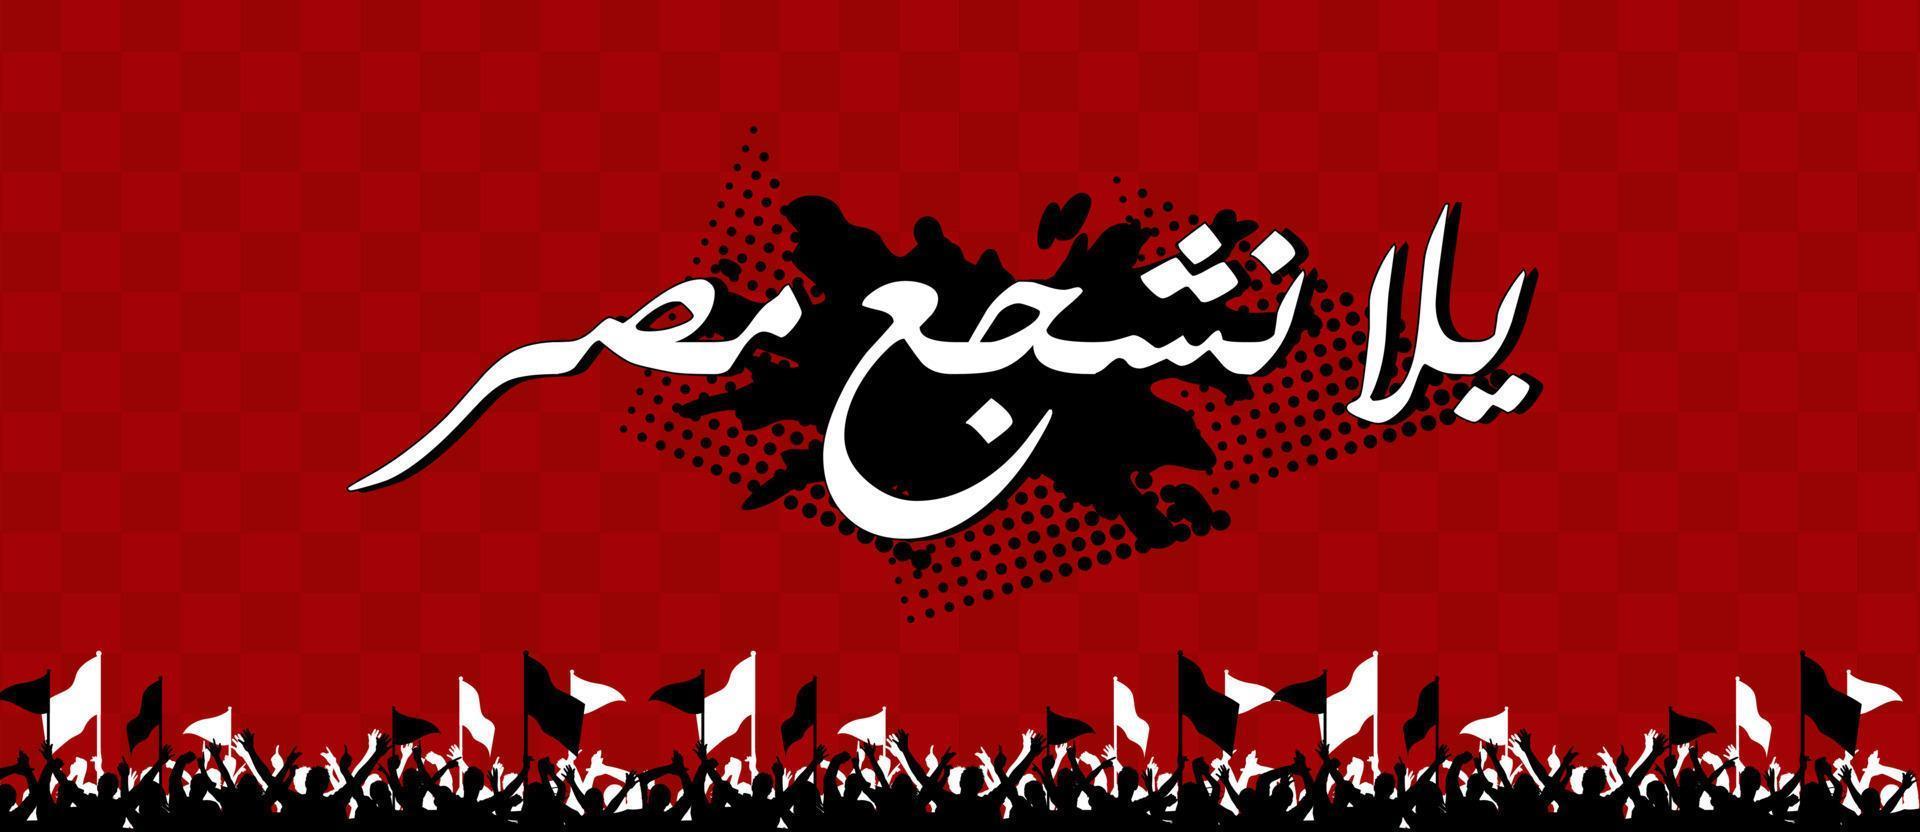 juichen voor Egypte in Arabische kalligrafie vrolijke voetbalsupporters vectorillustratie vector